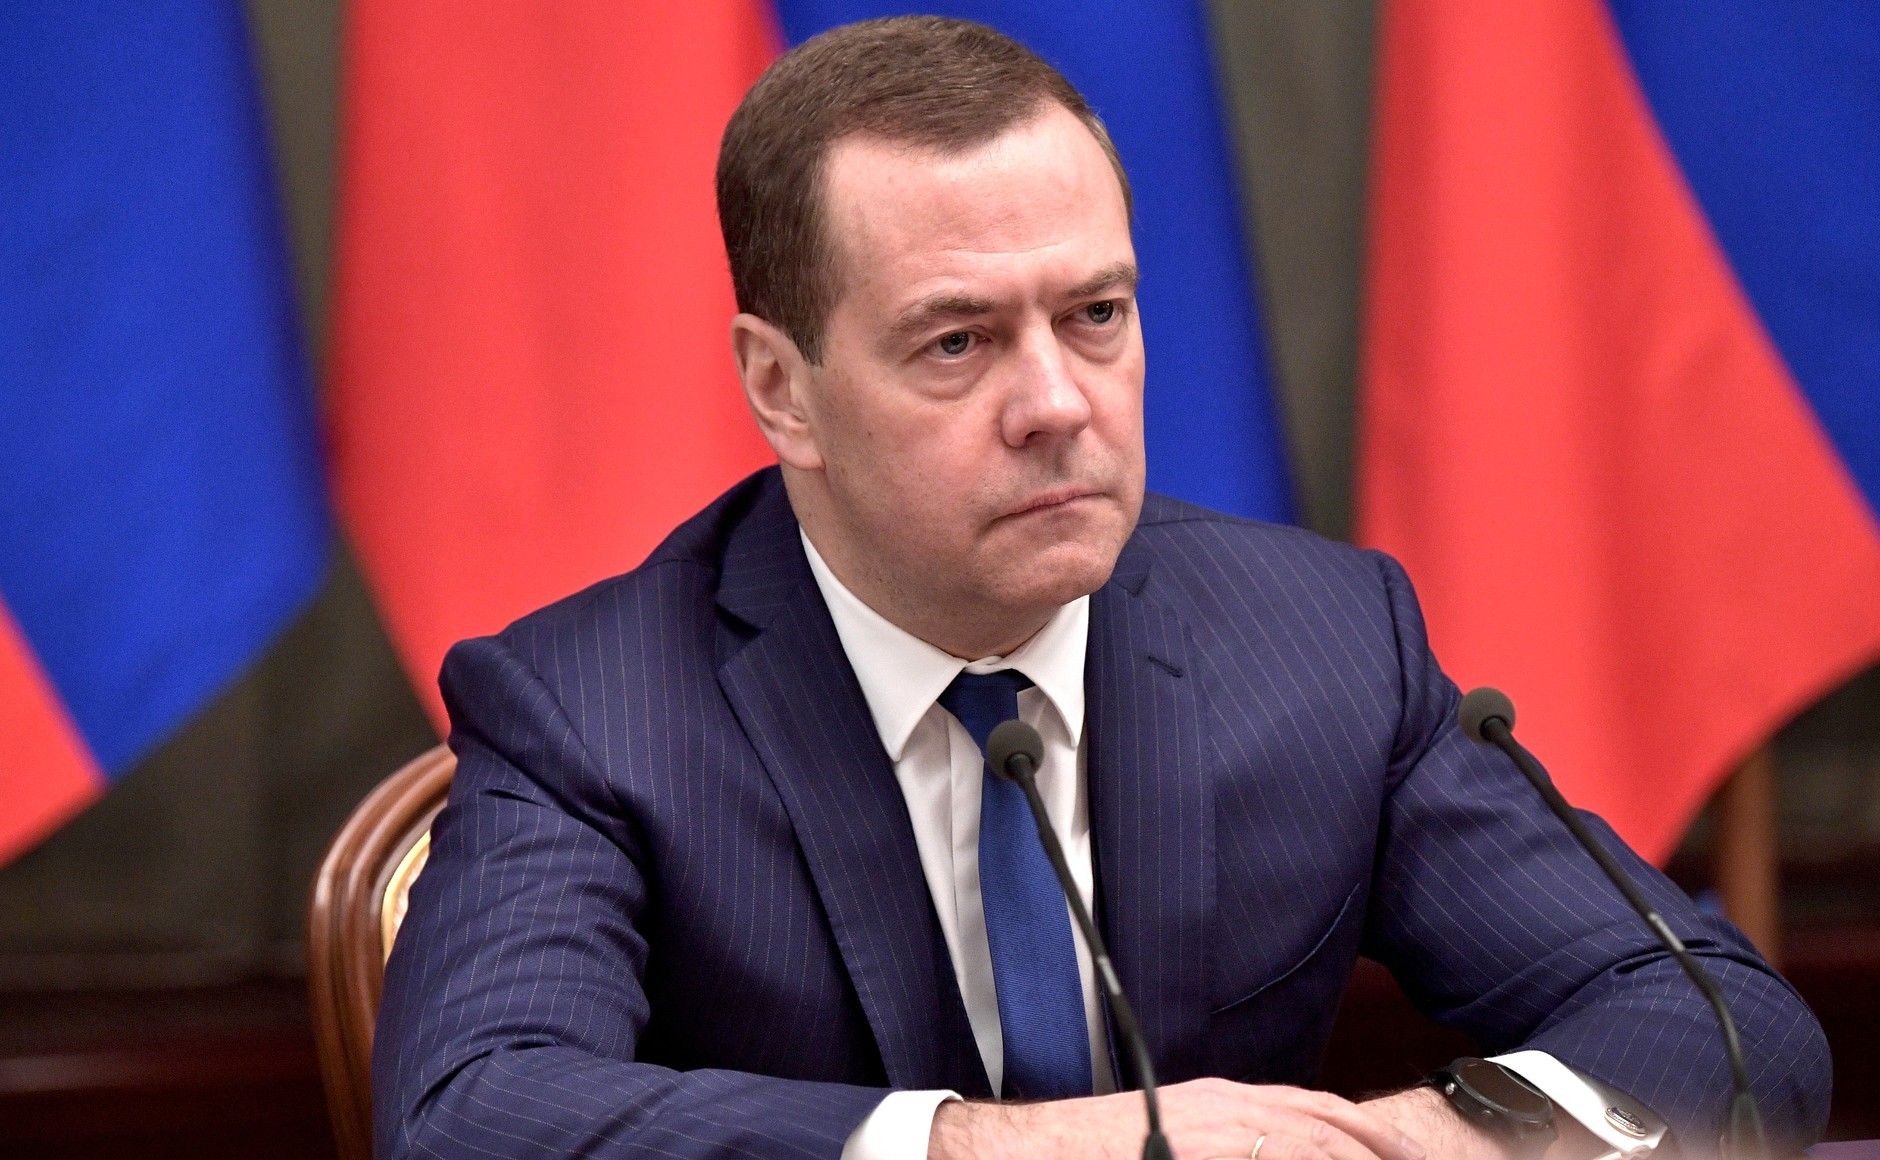 Медведев похвалил Виктора Орбана за мужественность и рассказал о «европейском стерилизованном стаде»